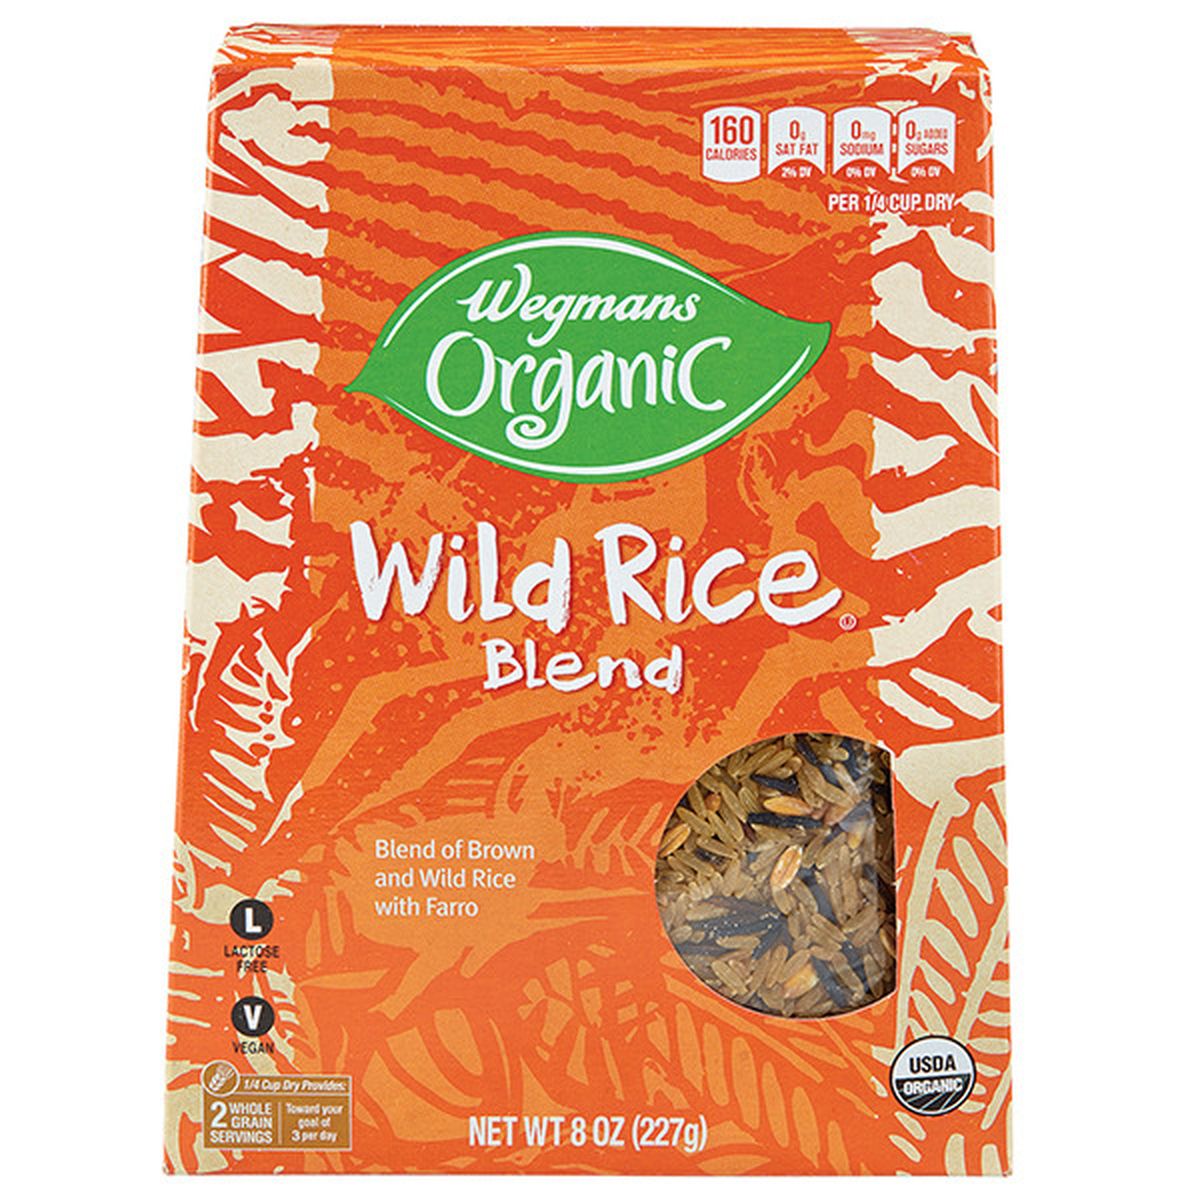 Calories in Wegmans Organic Wild Rice Blend